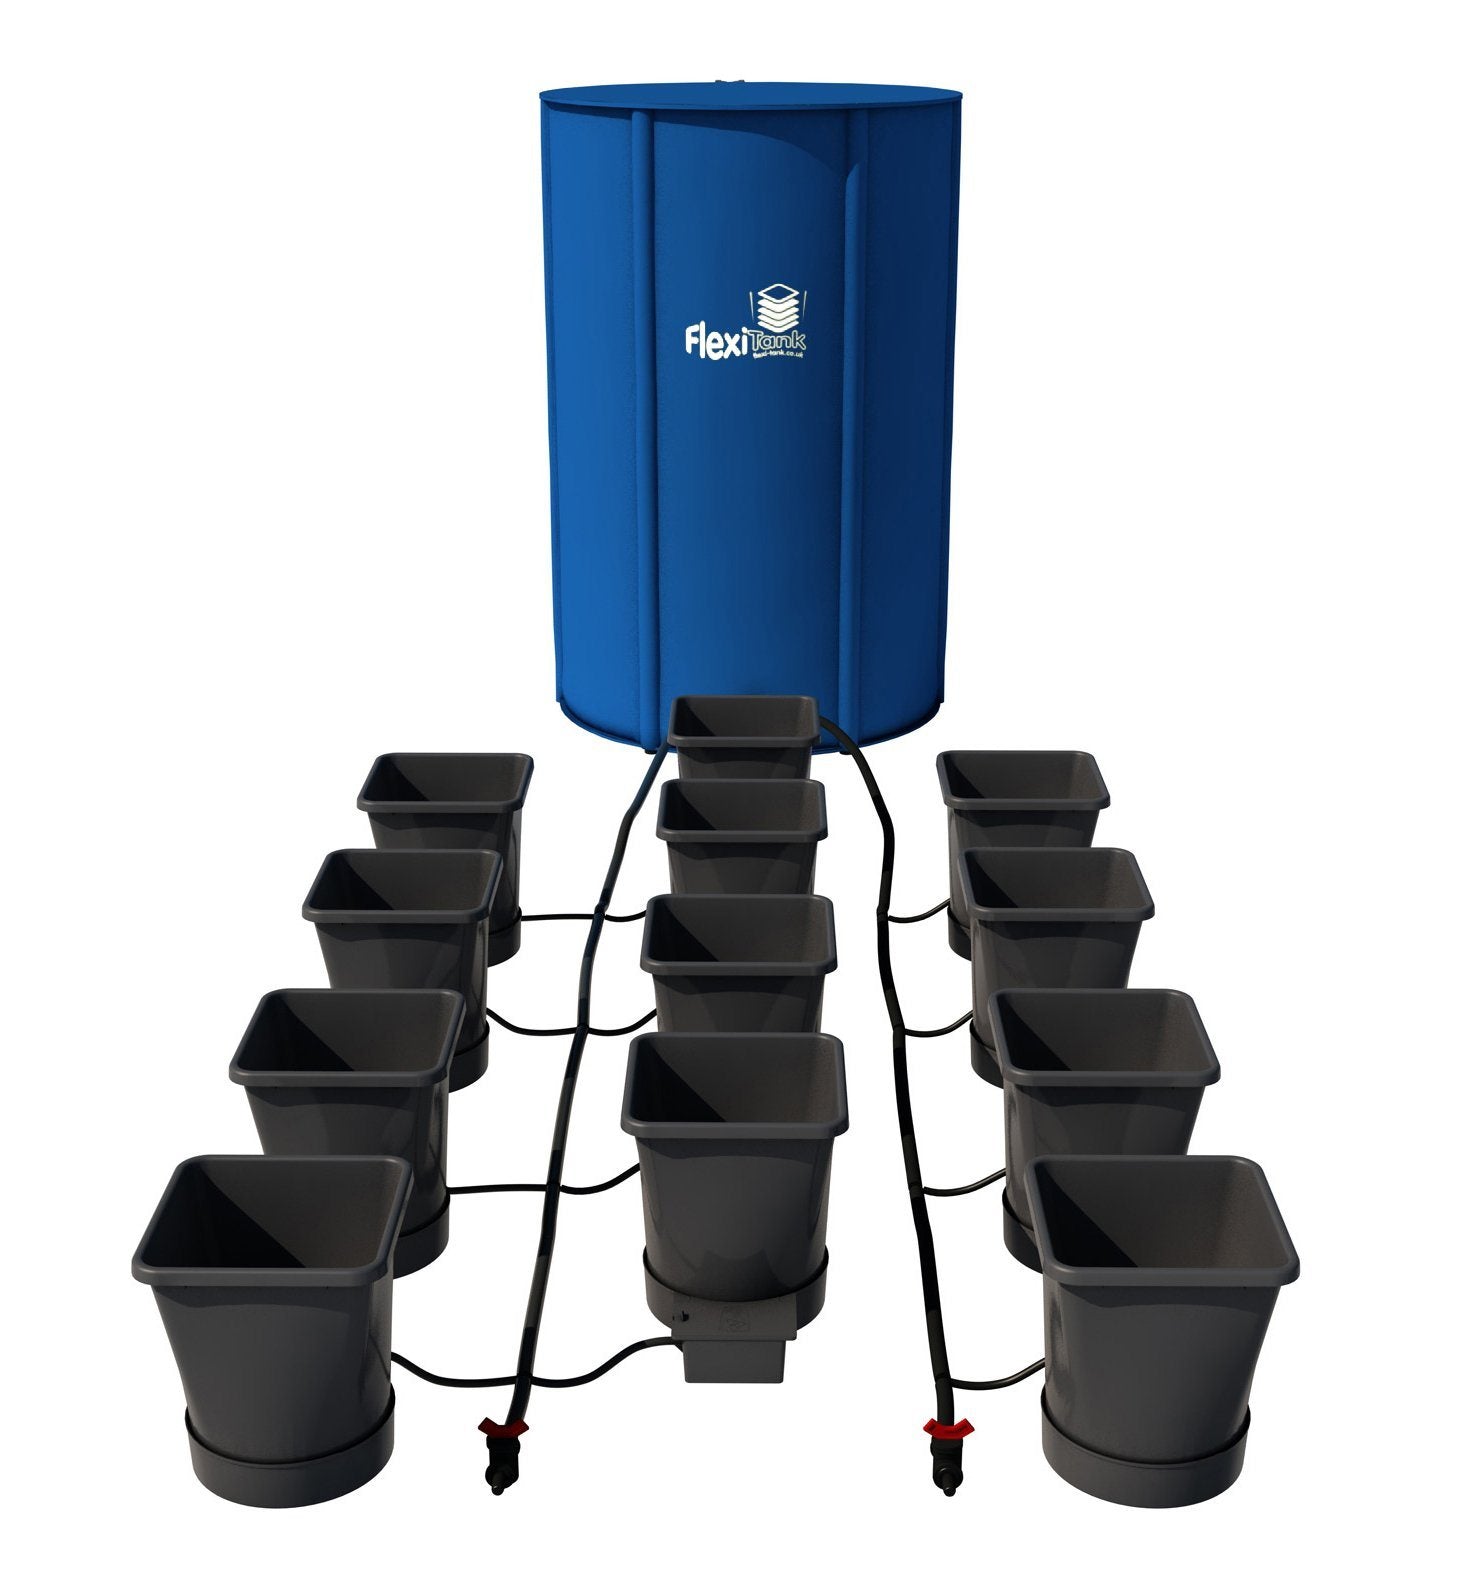 AutoPot XL 12 pot system - plastic pots with FREE NUTRIENT